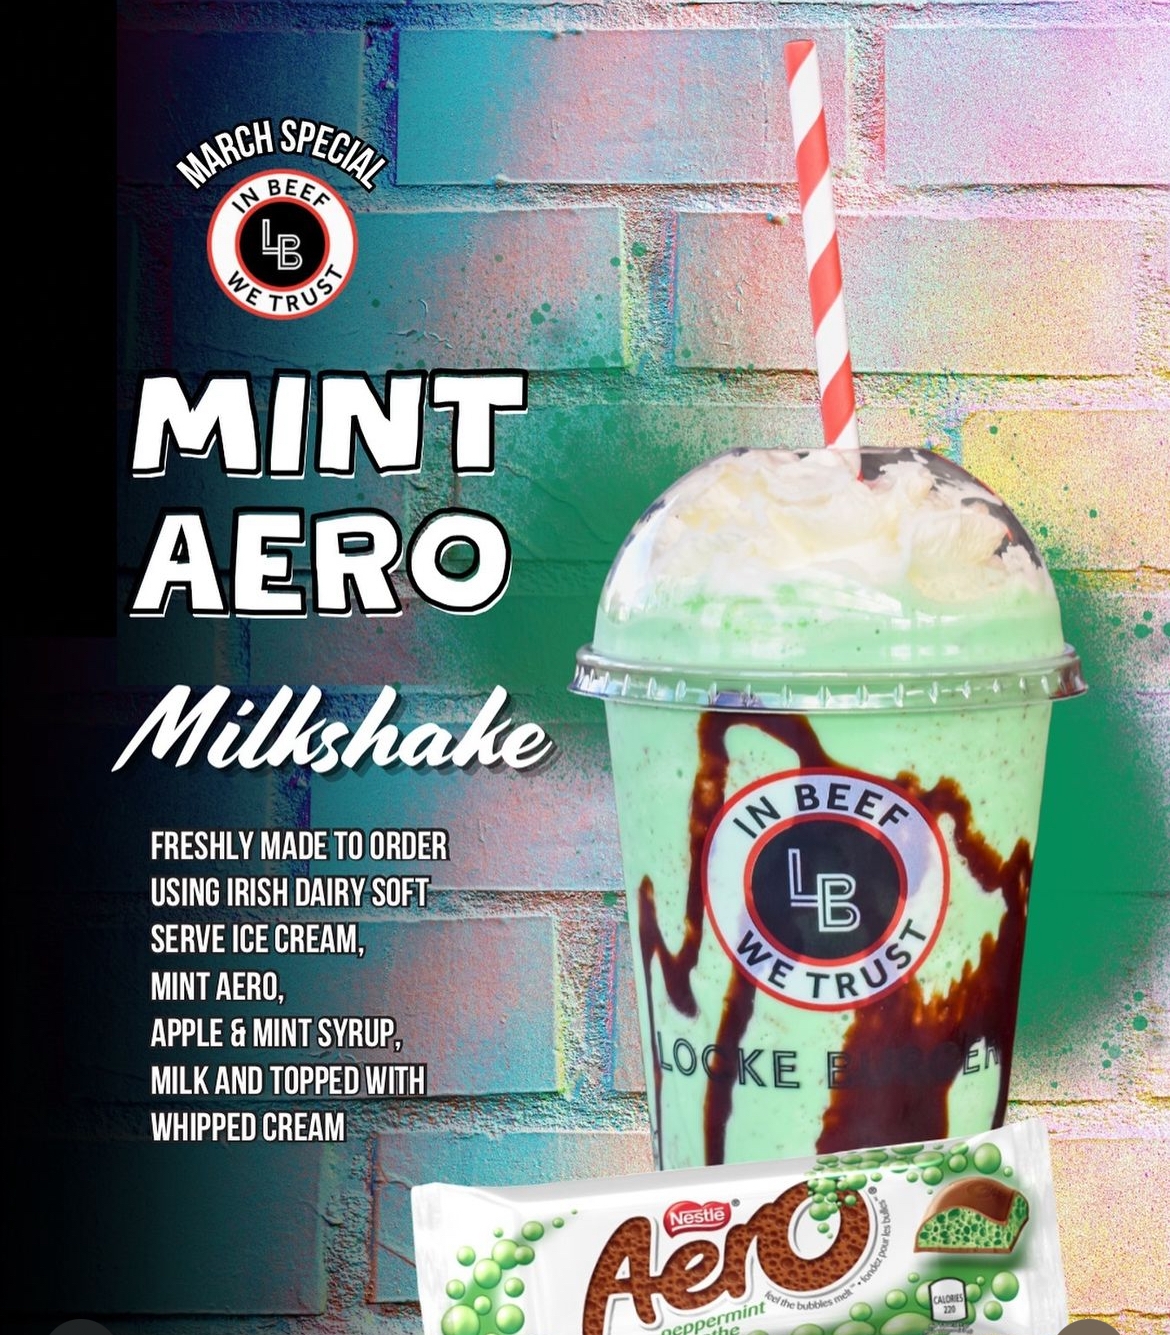 Special – Mint Aero Shake